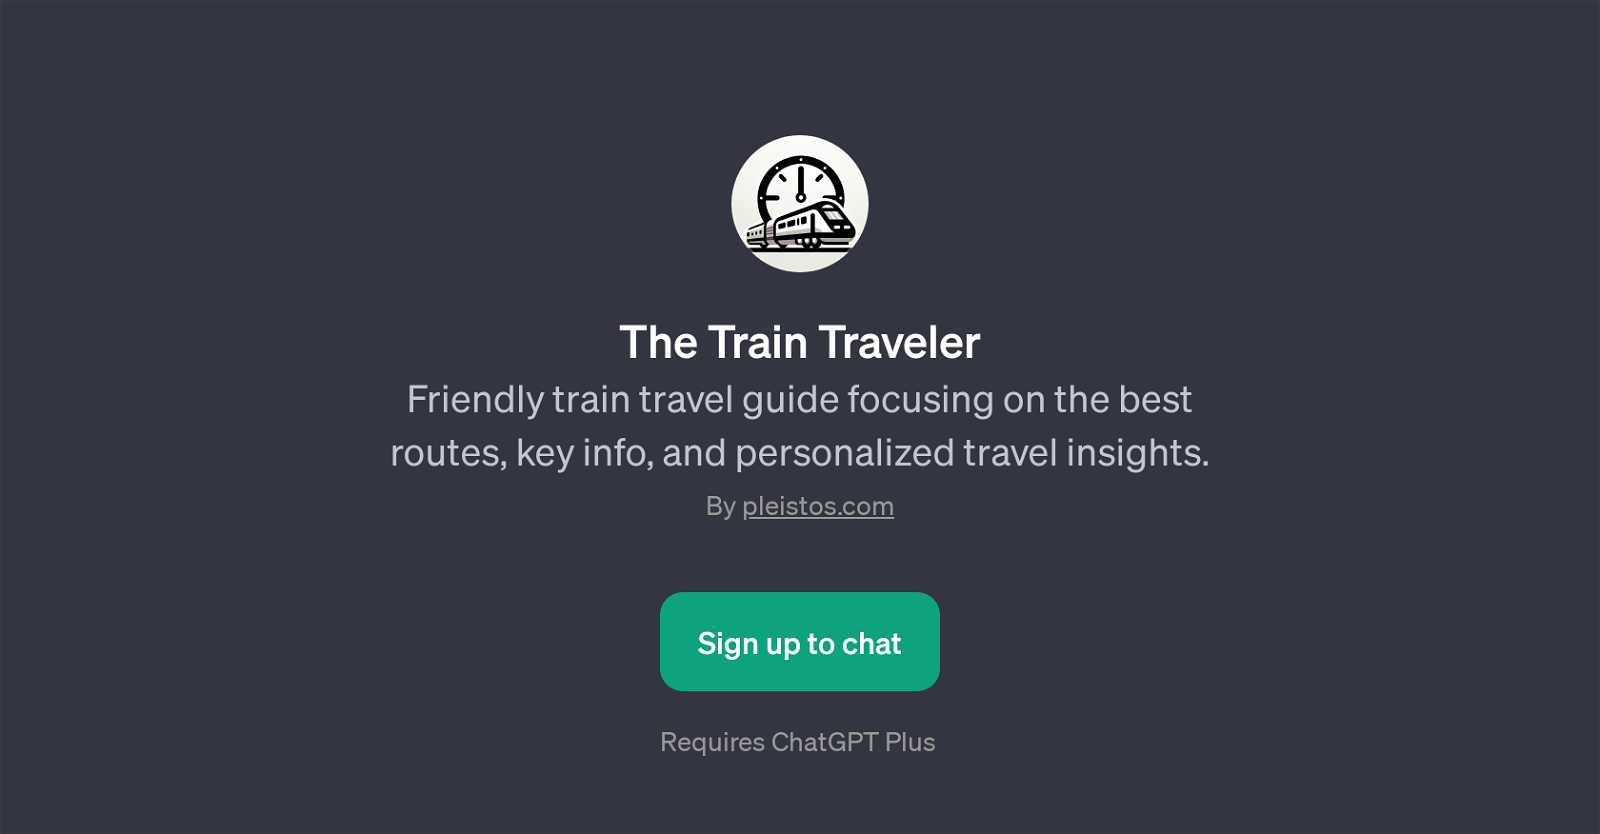 The Train Traveler website